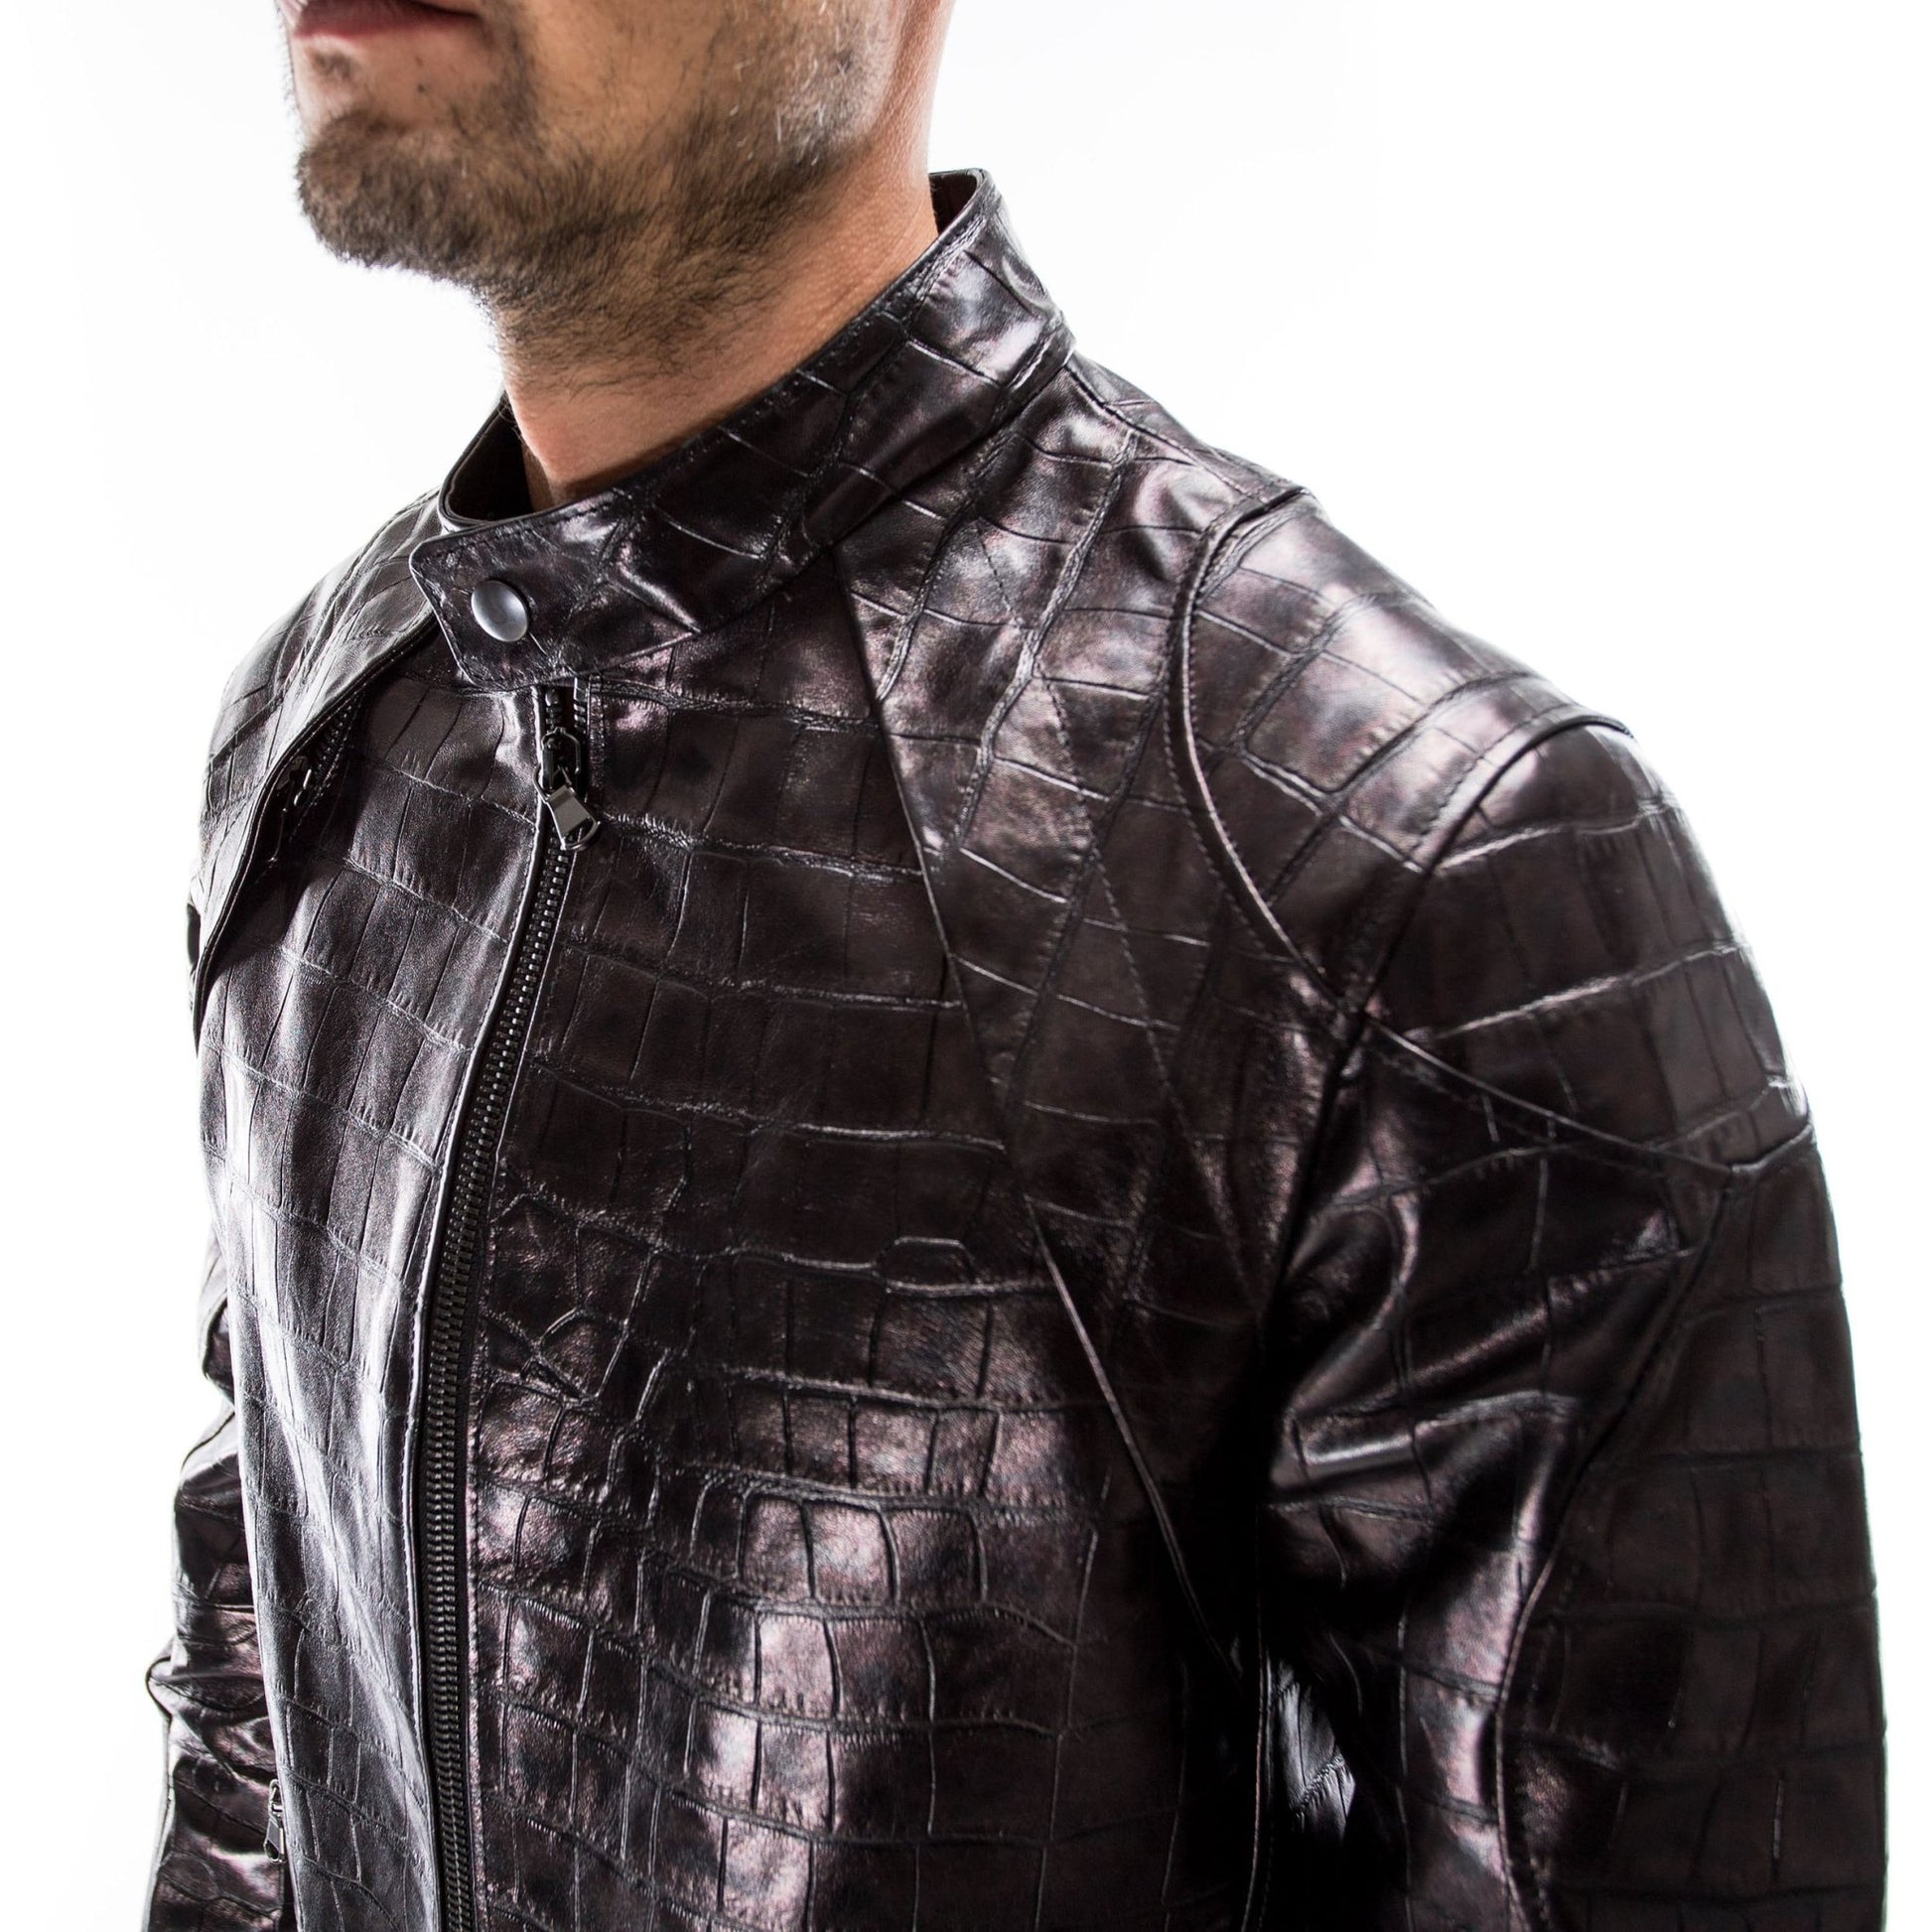 Alligator Jackets for Men  Leather jacket men style, Alligator